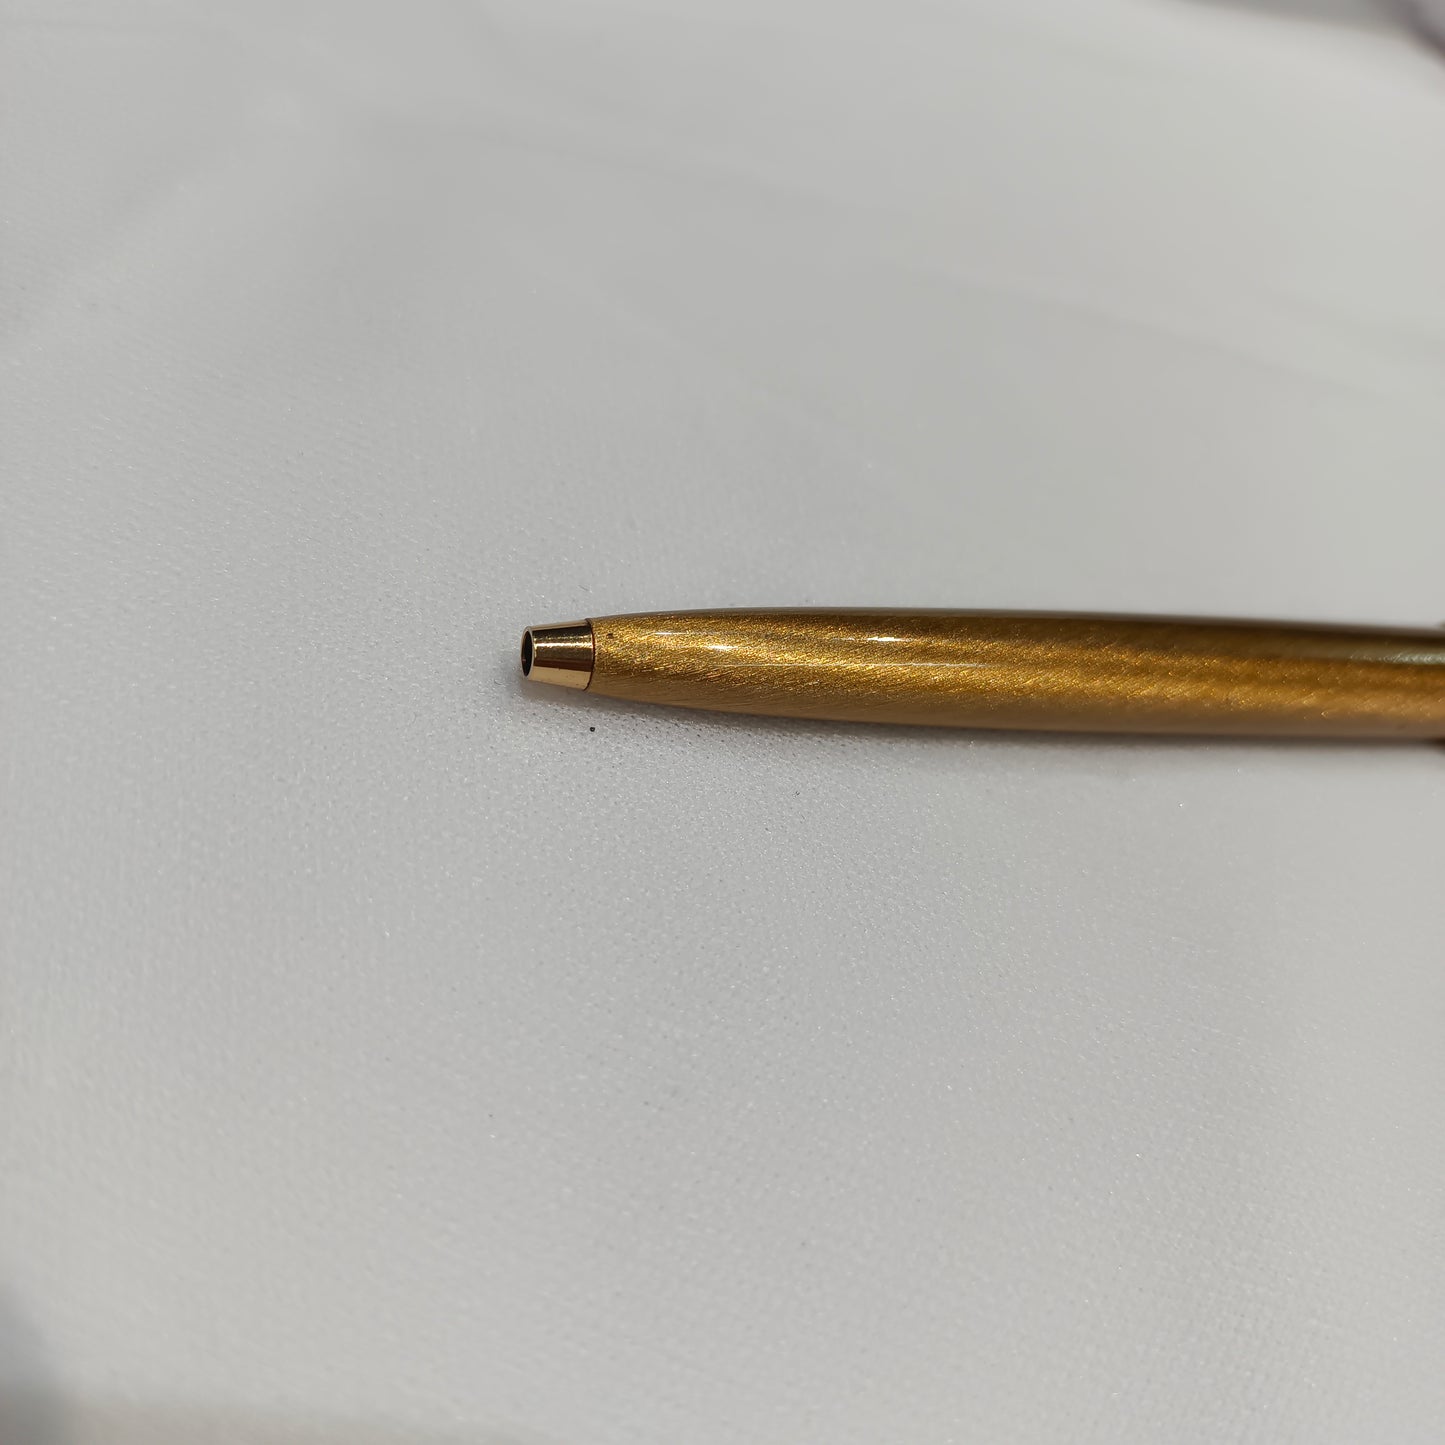 Sheaffer Golden Imperial Ball Pen